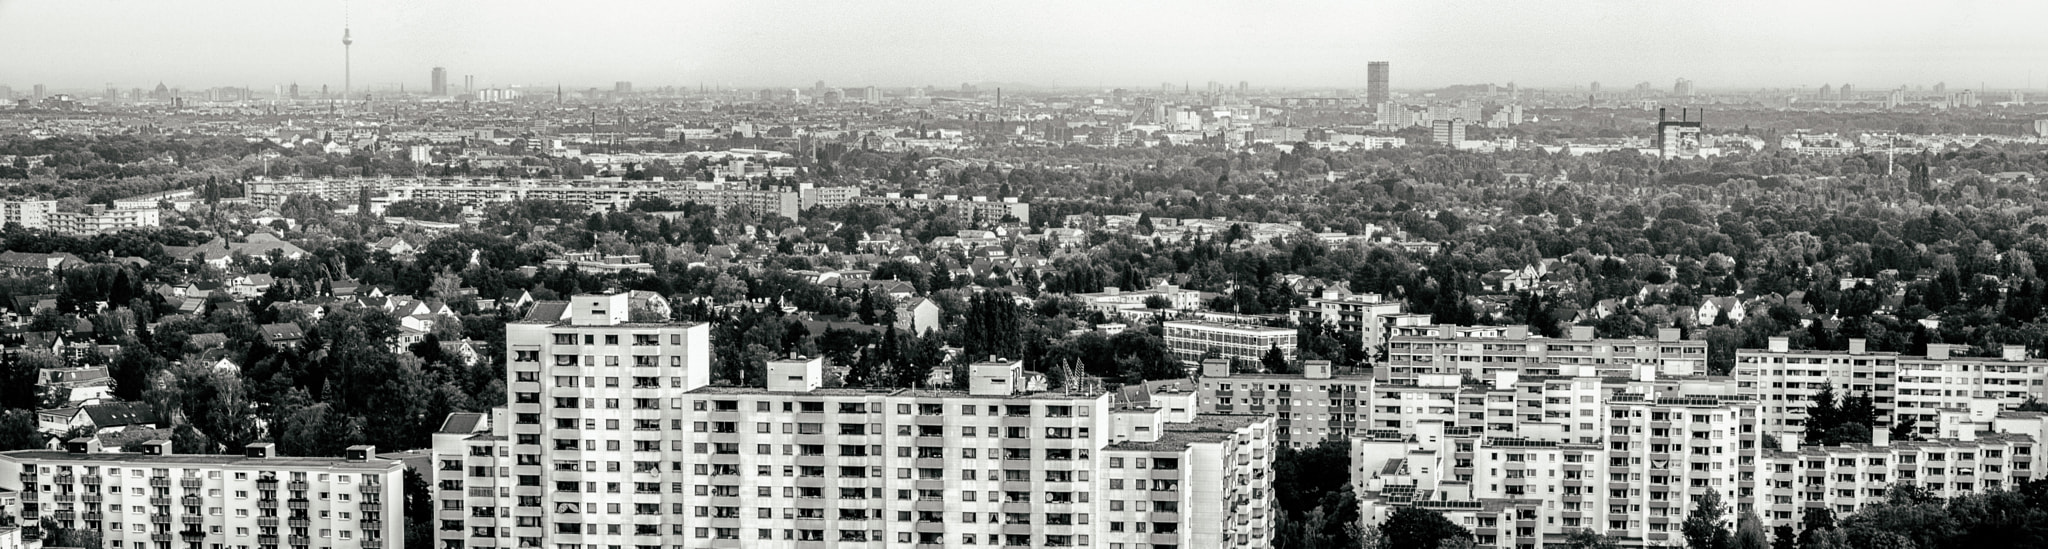 Pentax K-1 sample photo. Berlin-city von oben photography